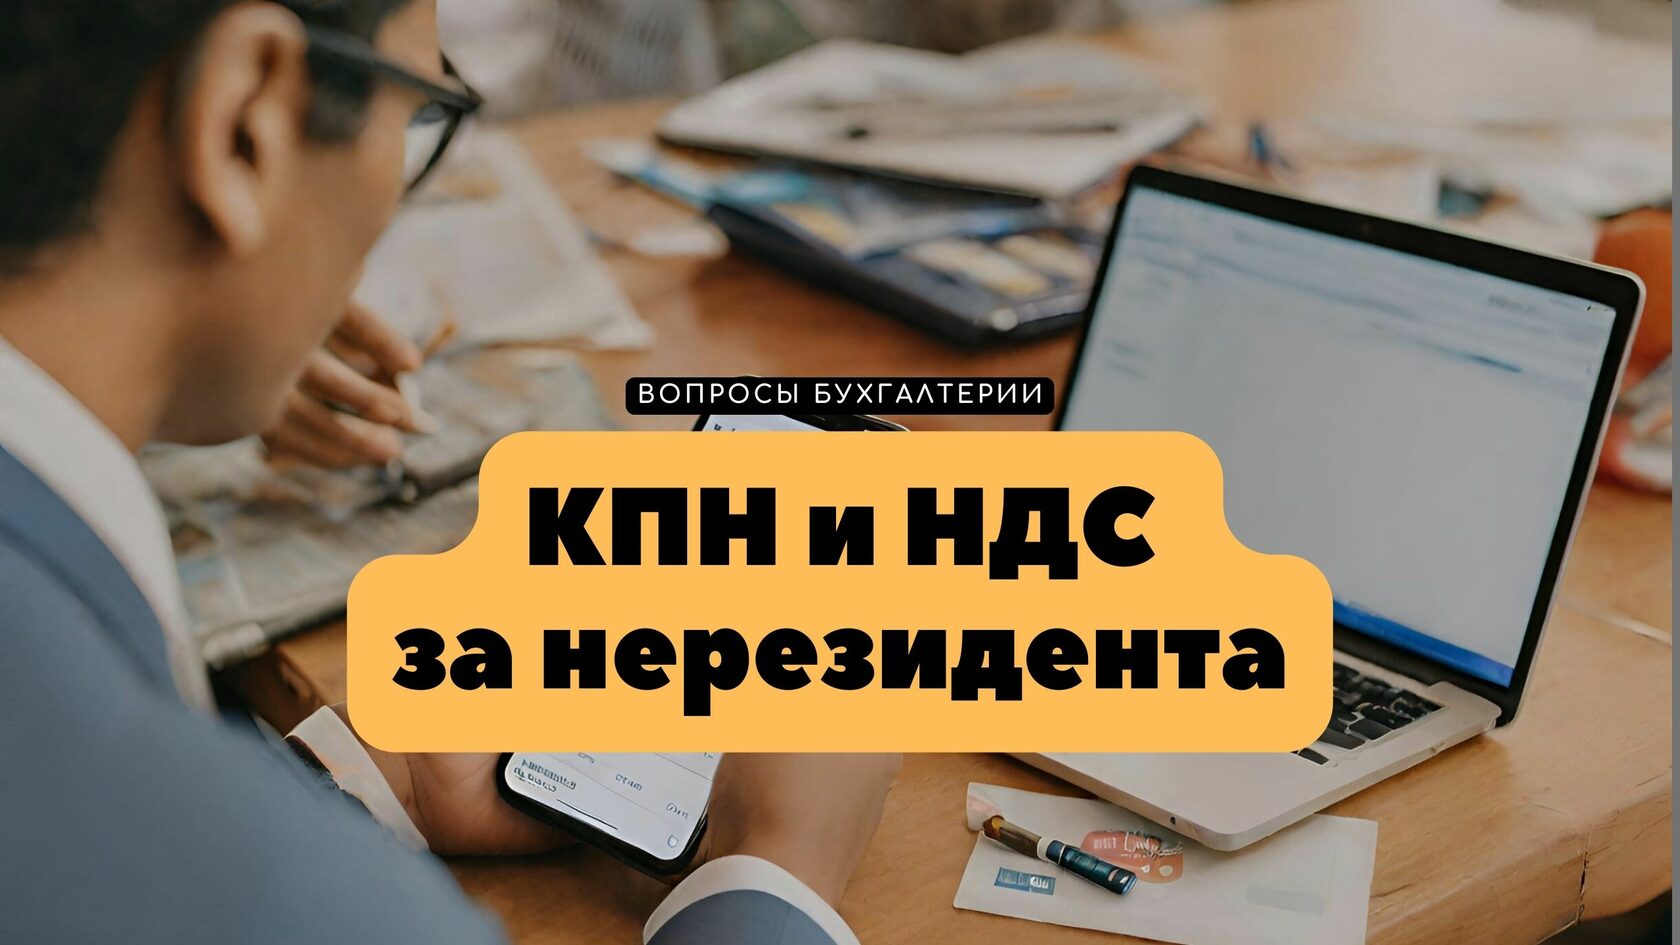 Налогообложение Google Рекламы в Казахстане: КПН и НДС